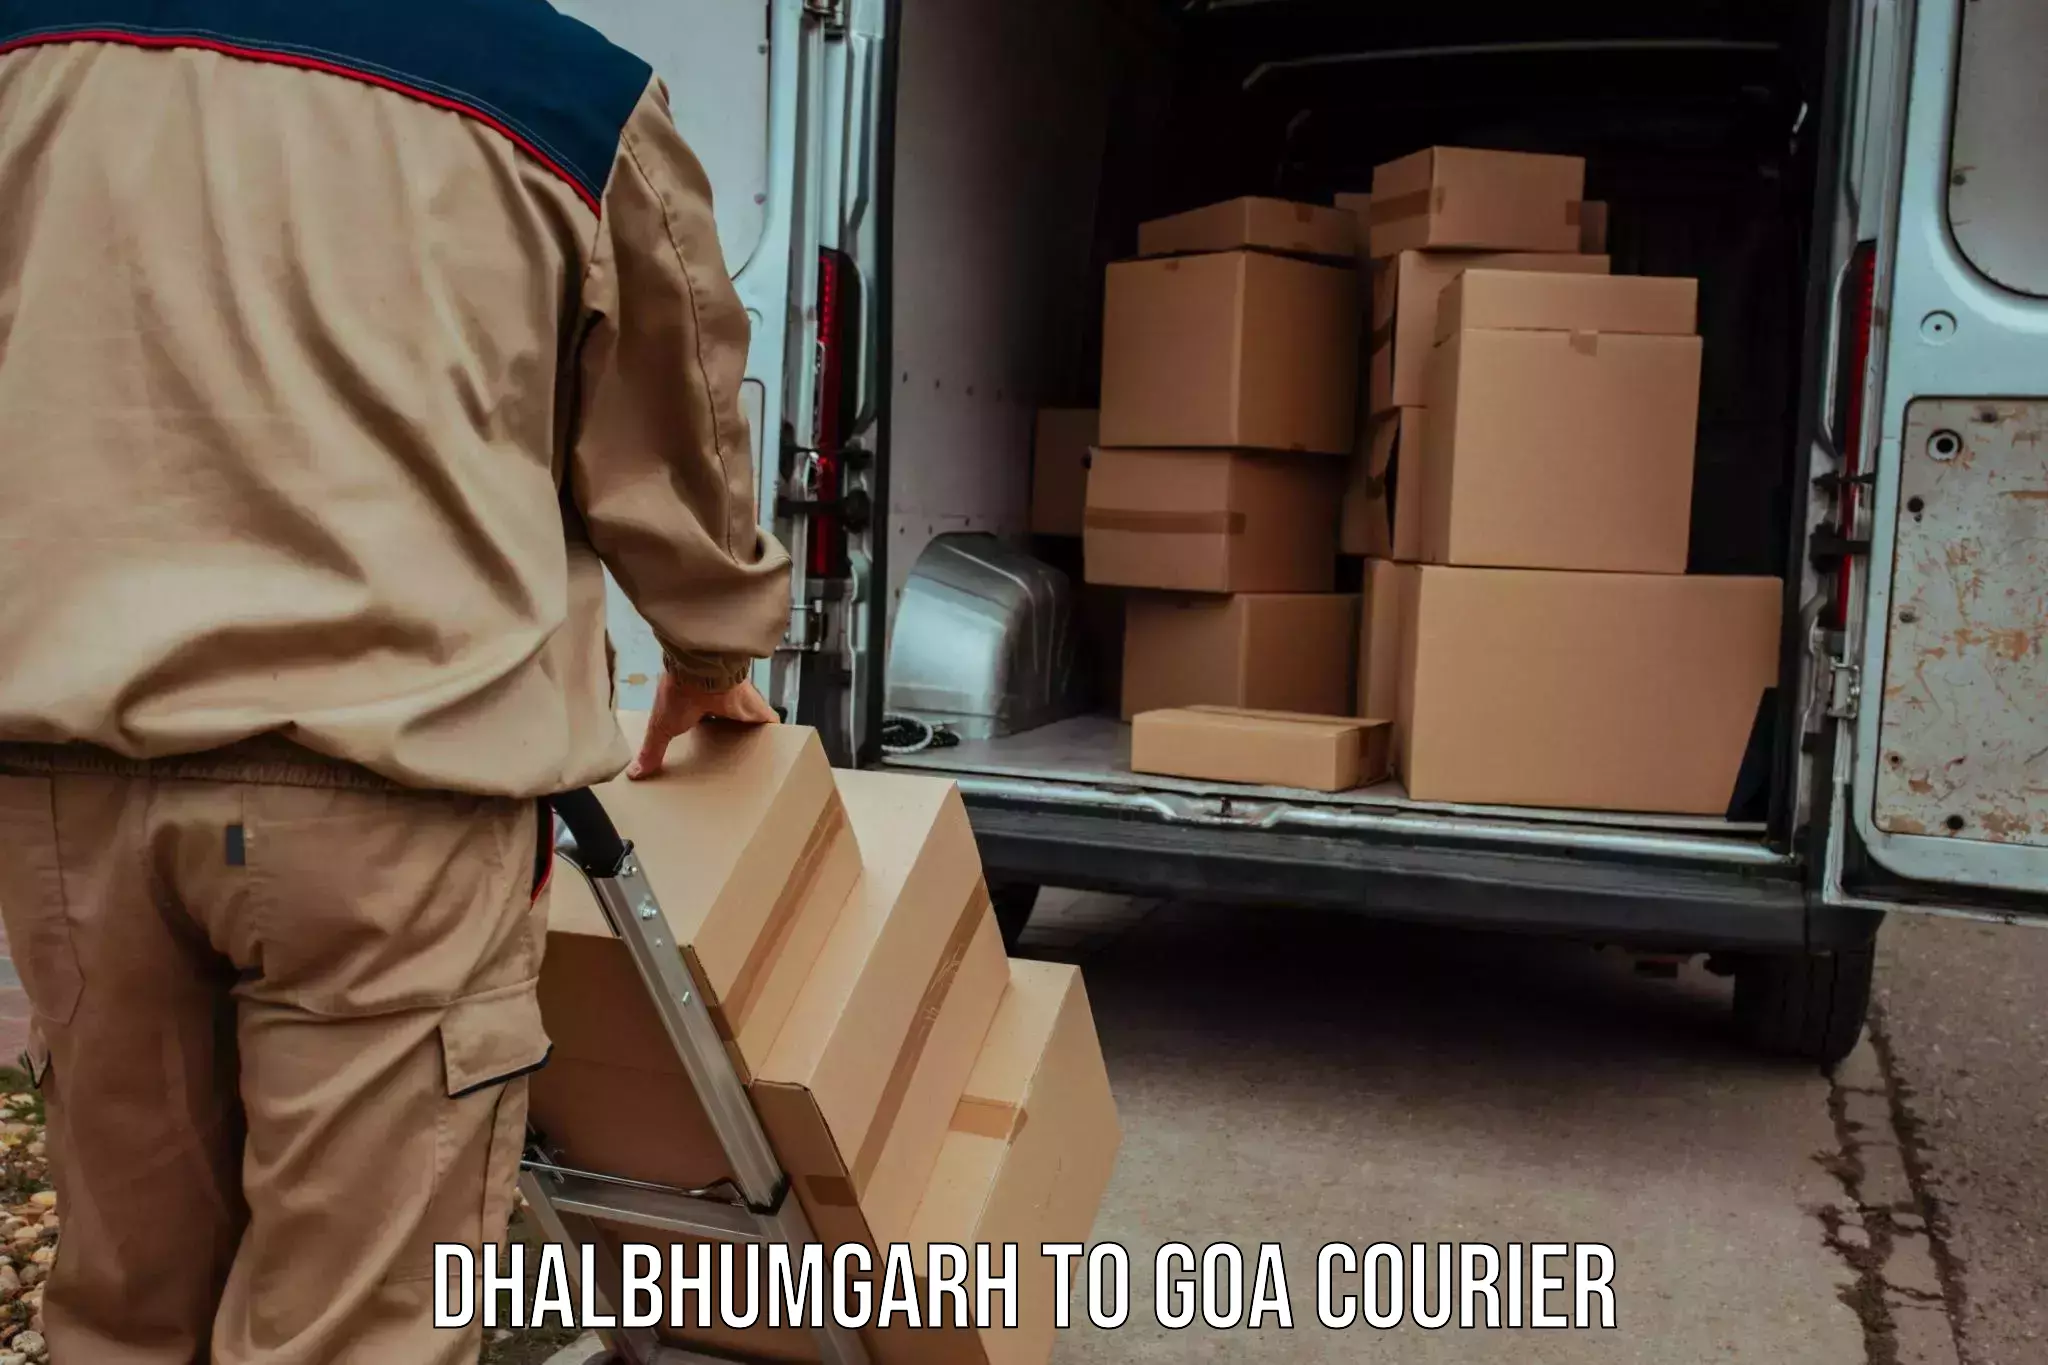 Express delivery capabilities Dhalbhumgarh to IIT Goa